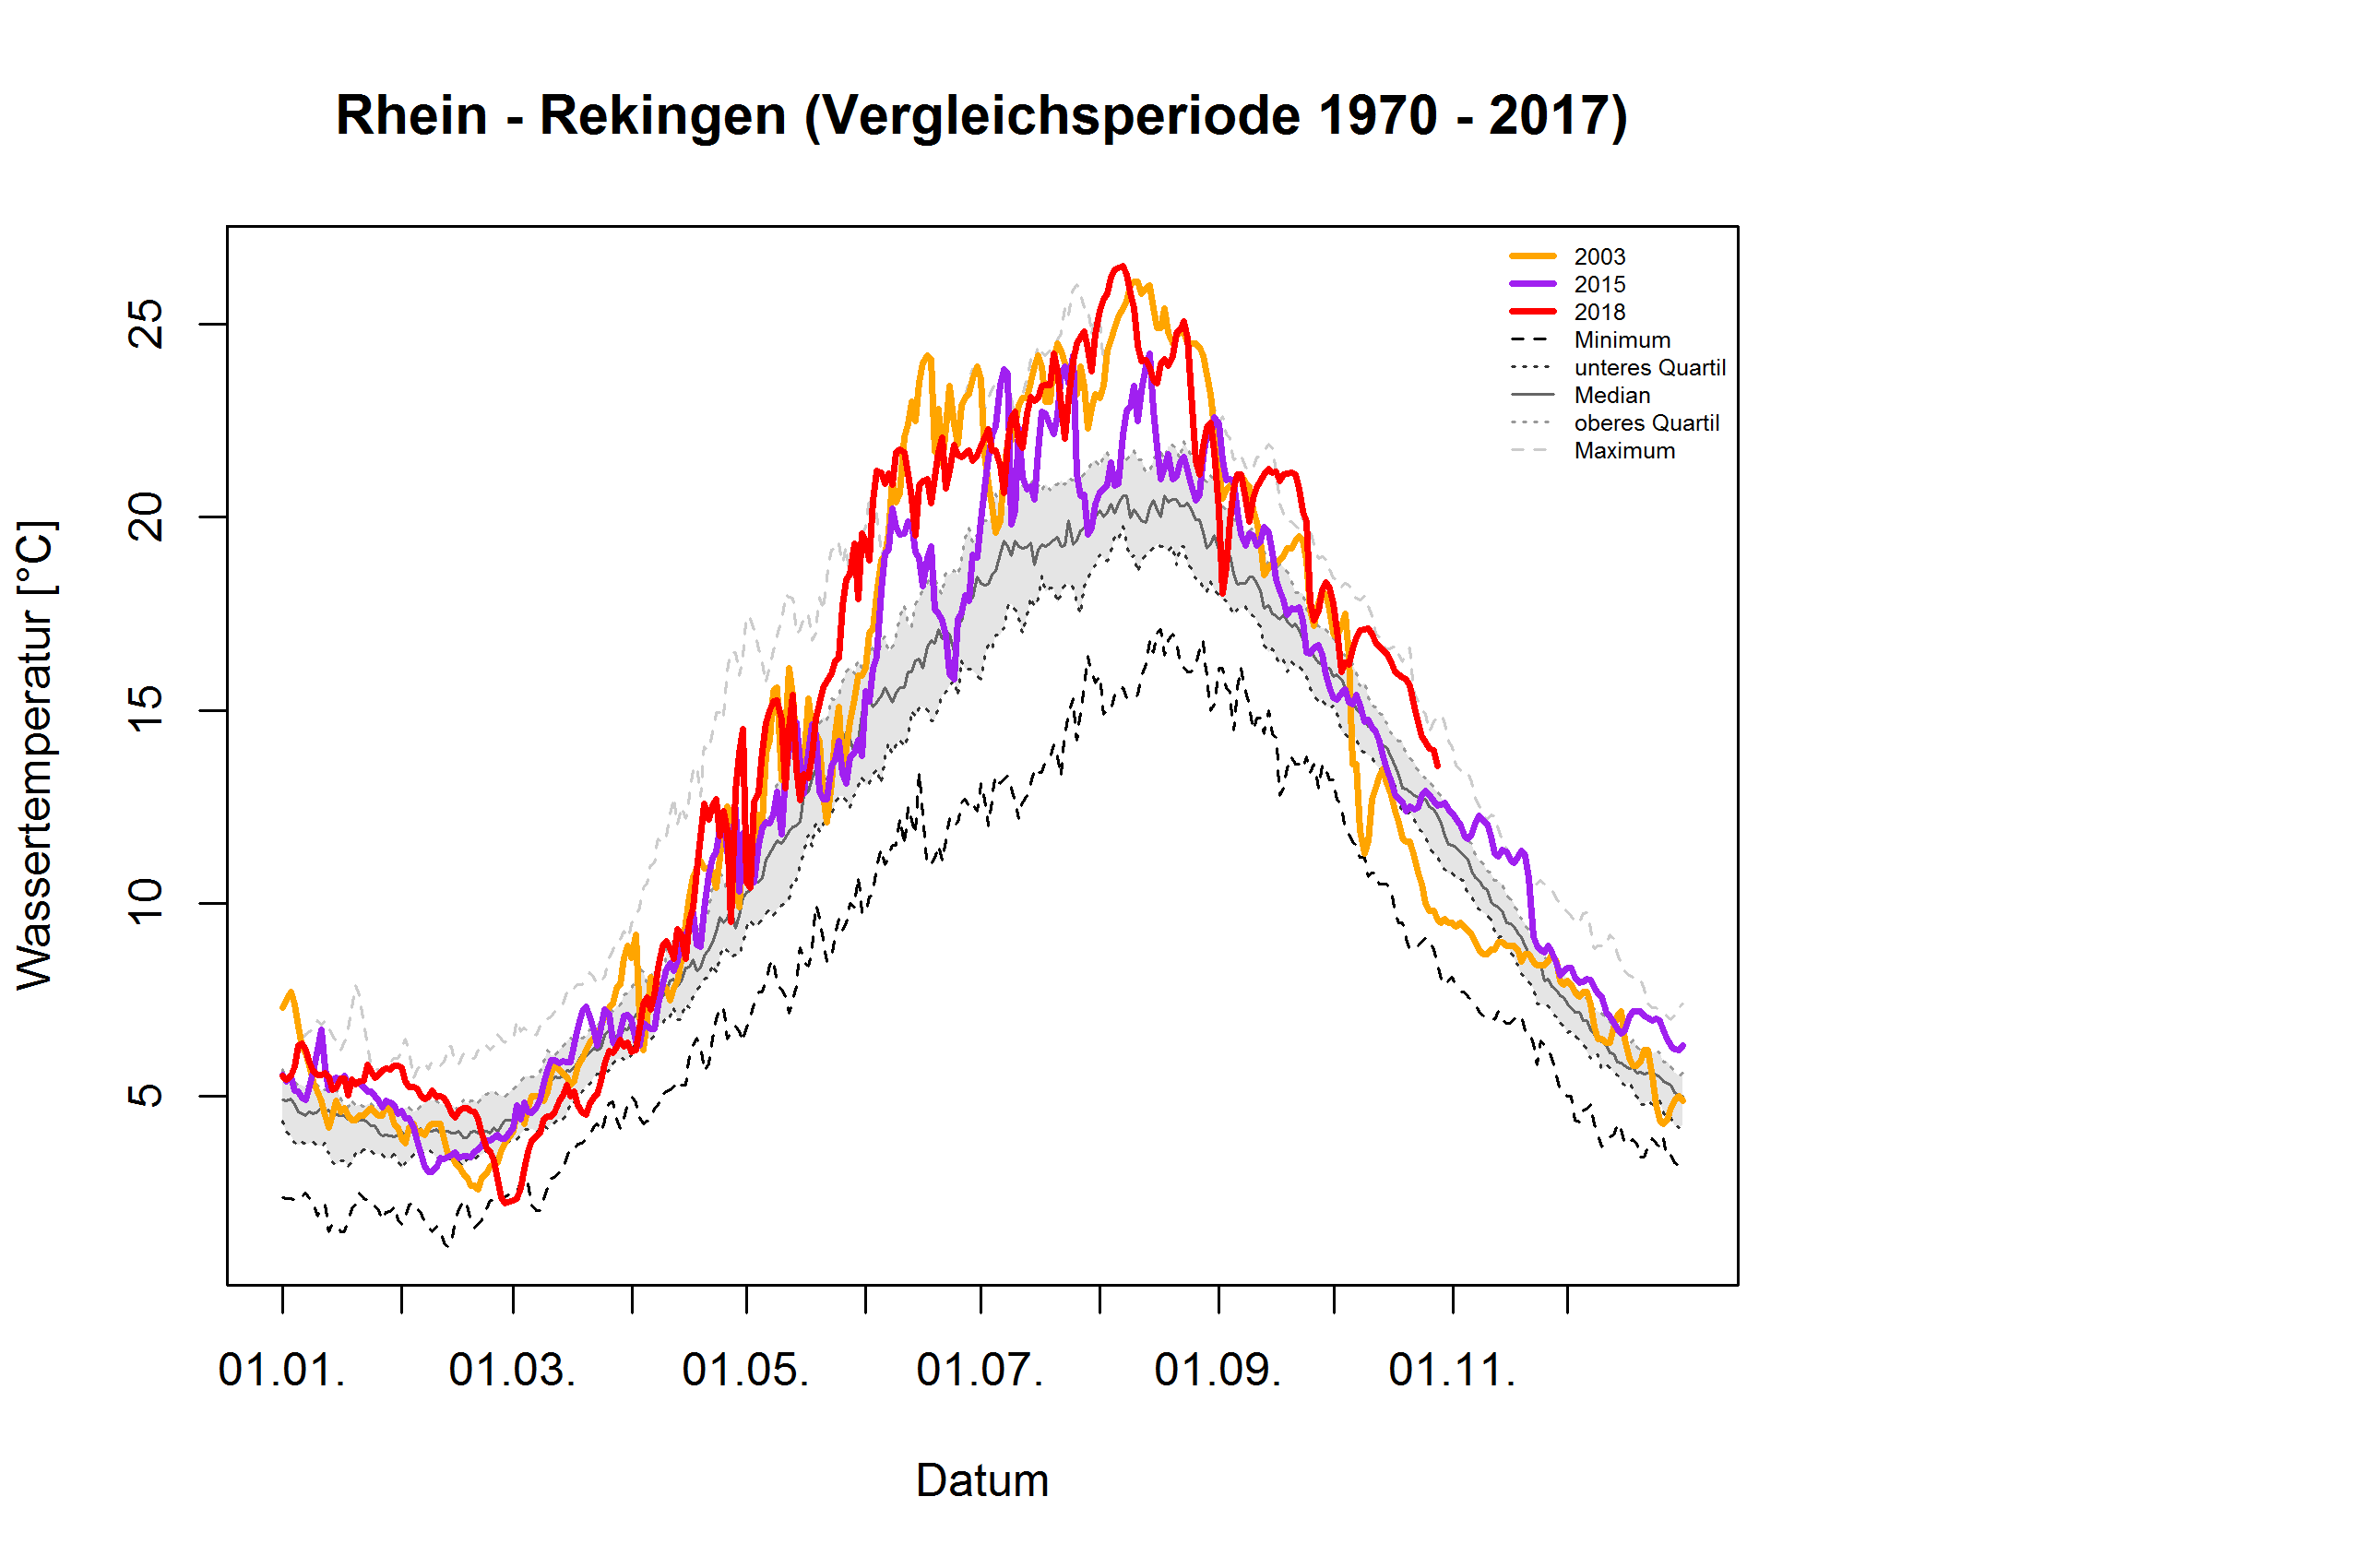 Rhein - Rekingen: Vergleichsperiode 1970 - 2017